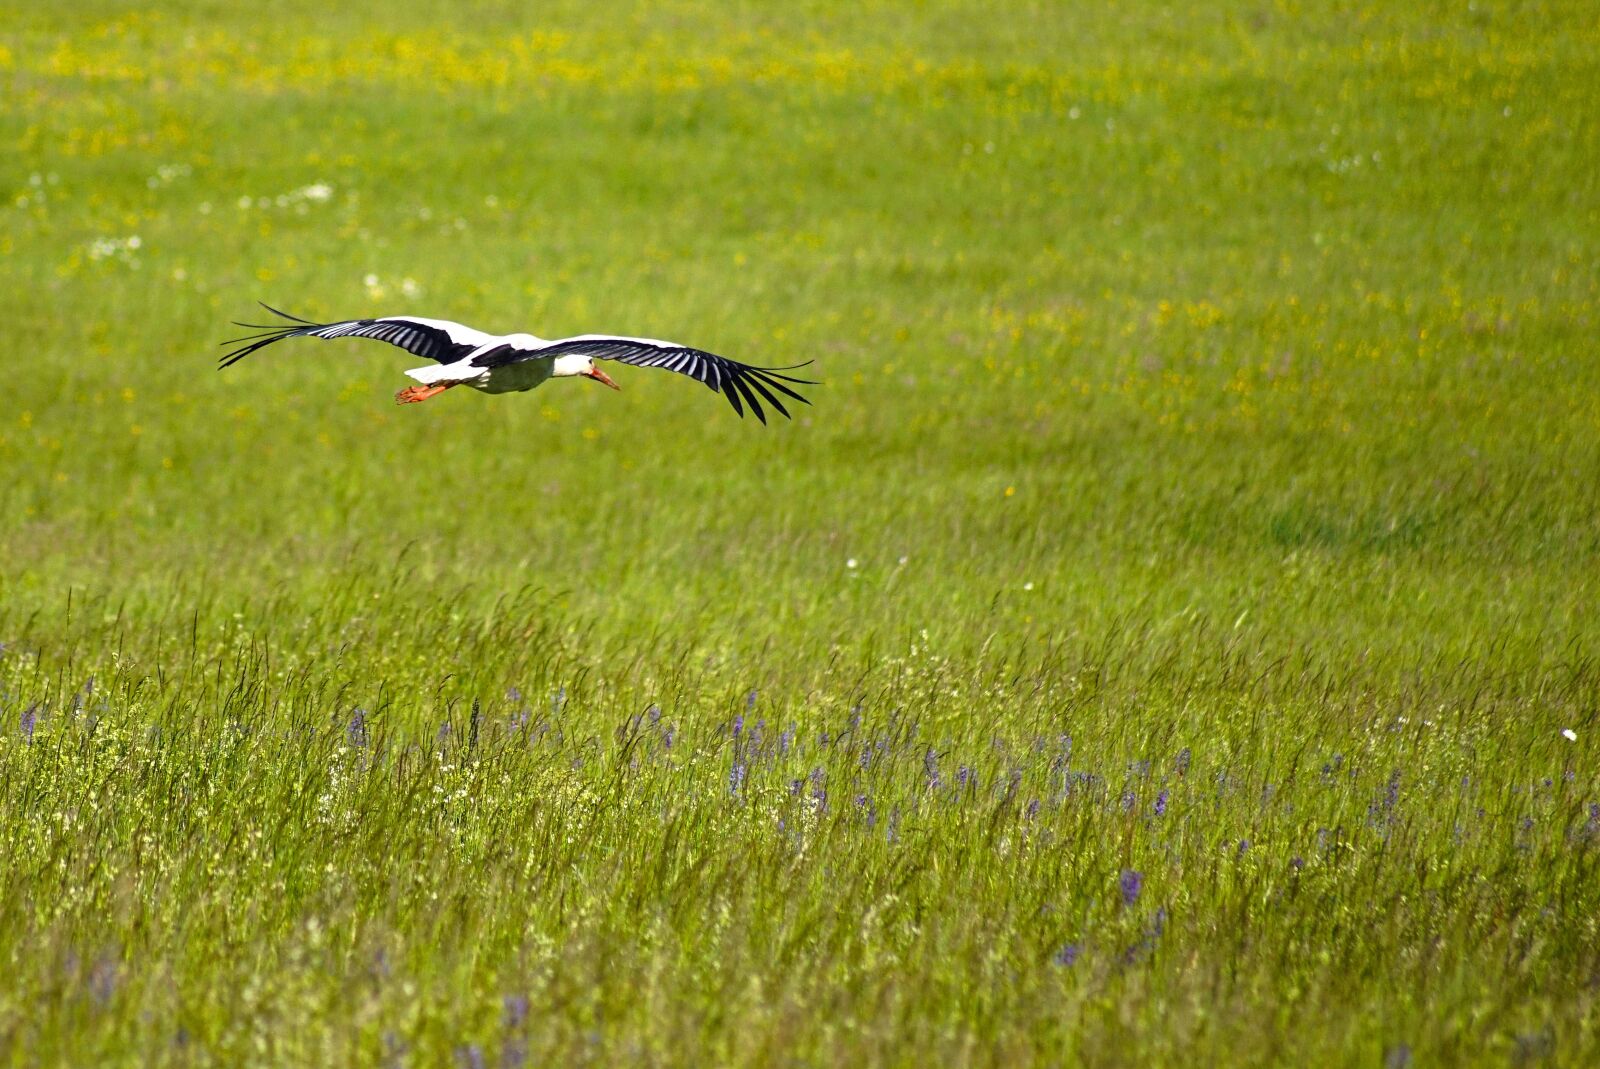 Sony SLT-A68 sample photo. Stork, bird, animal photography